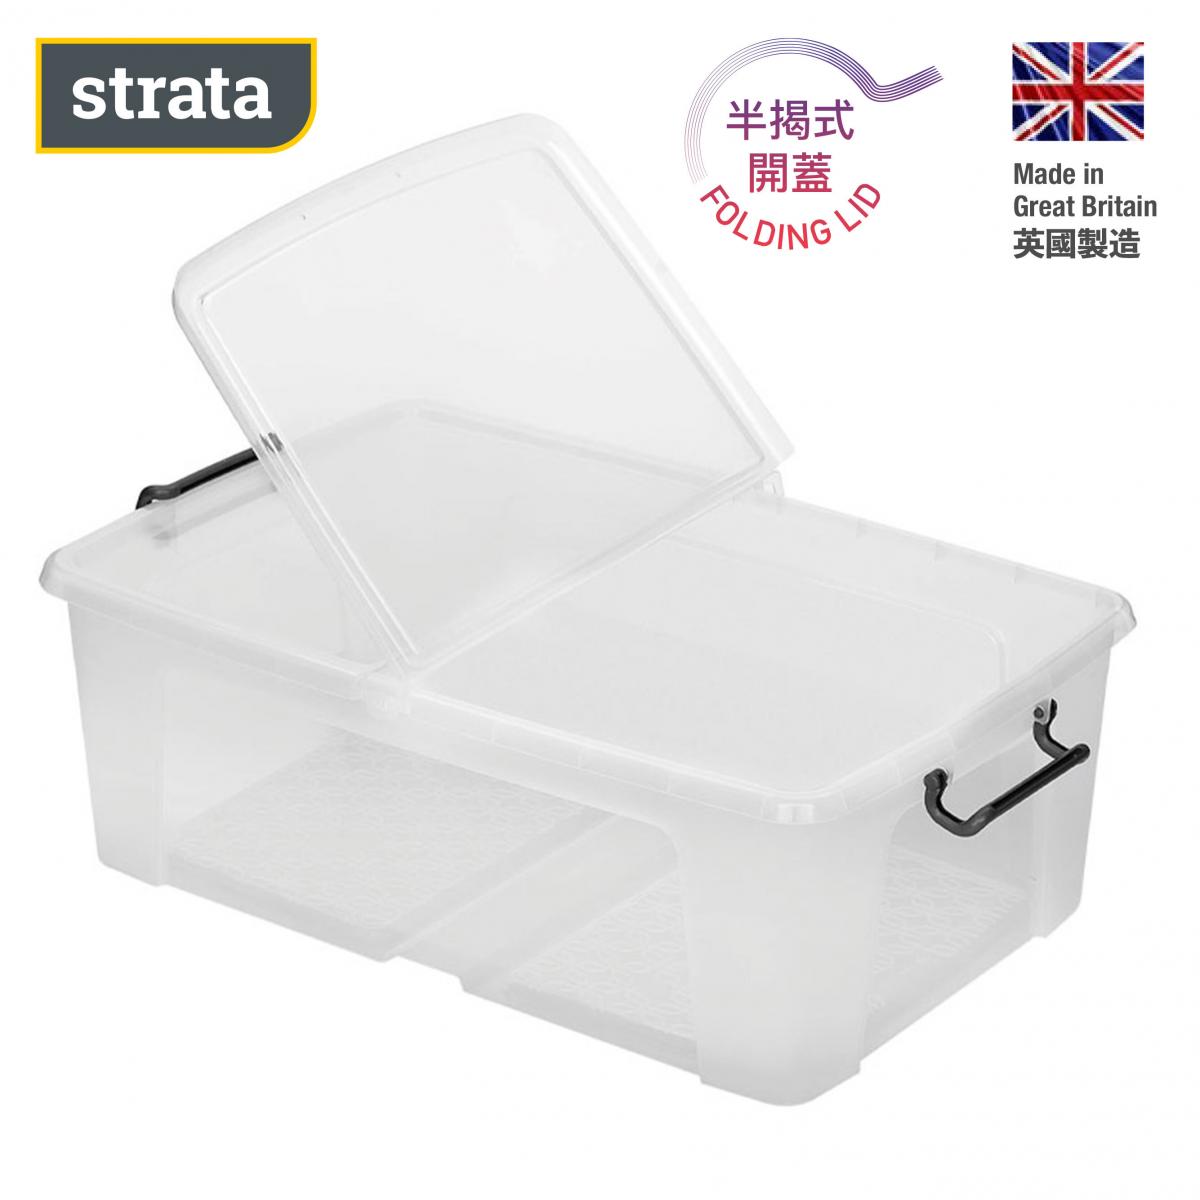 50 Litre 透明膠箱 - 英國製造 -   床下儲物